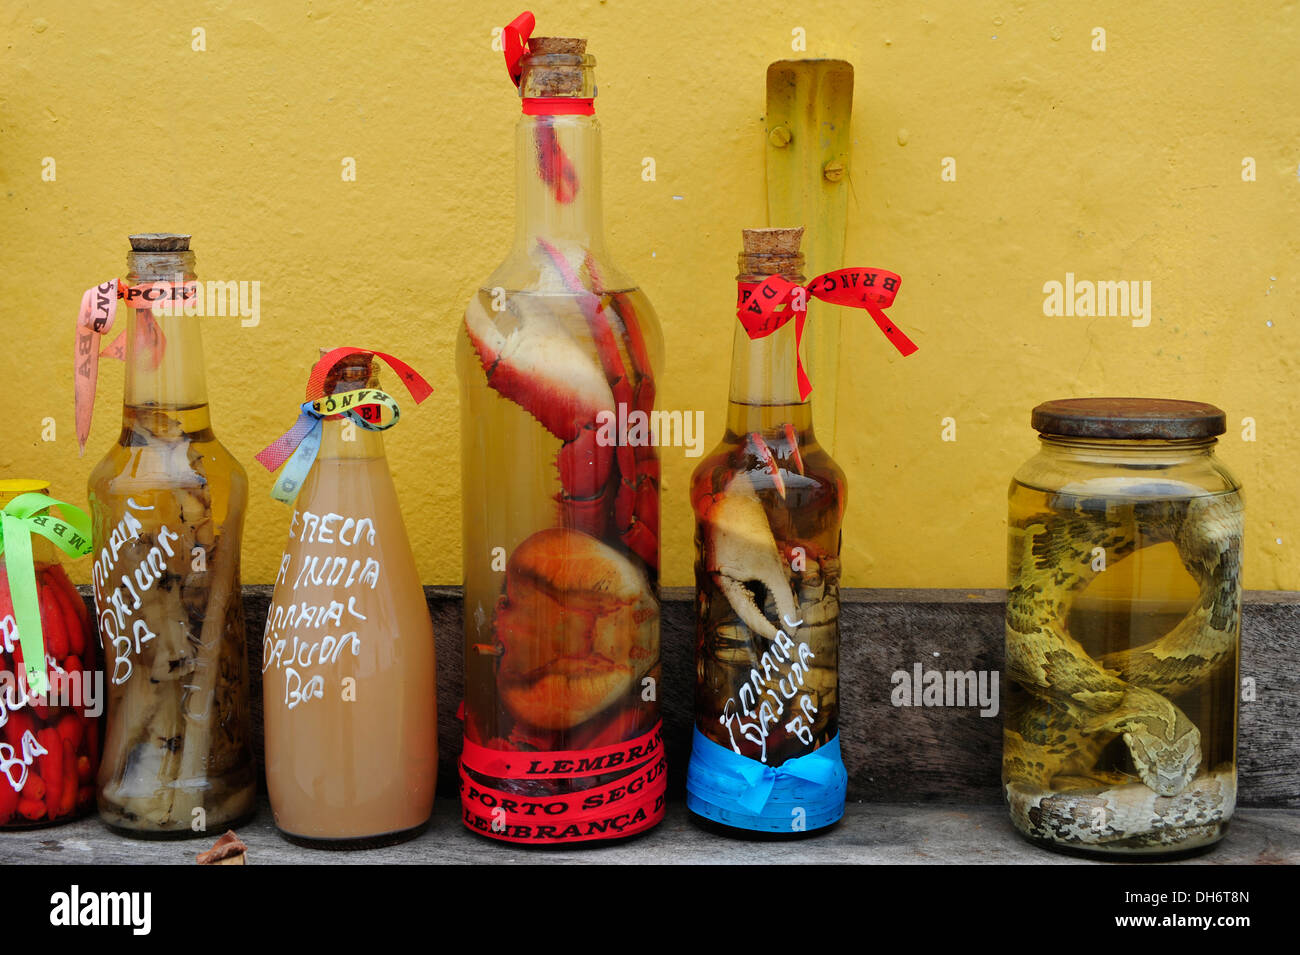 Animales muertos en botellas con alcohol, Arraial d'Ajuda, Bahia, Brasil. Foto de stock